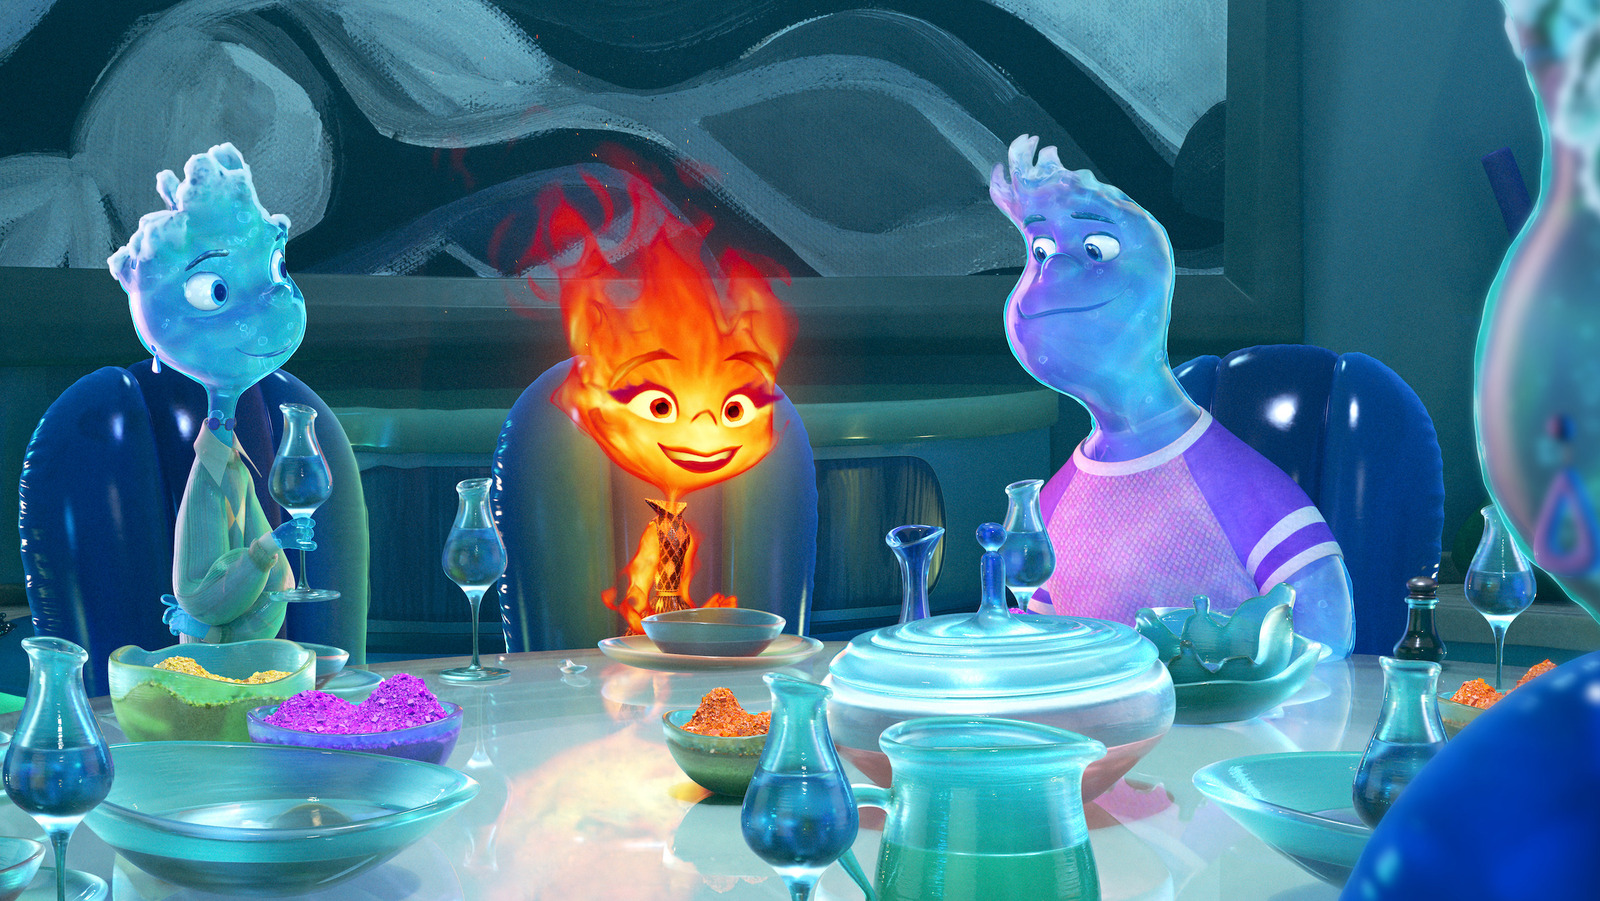 Água e fogo: as personagens do filme “Elemental” vão estar nos